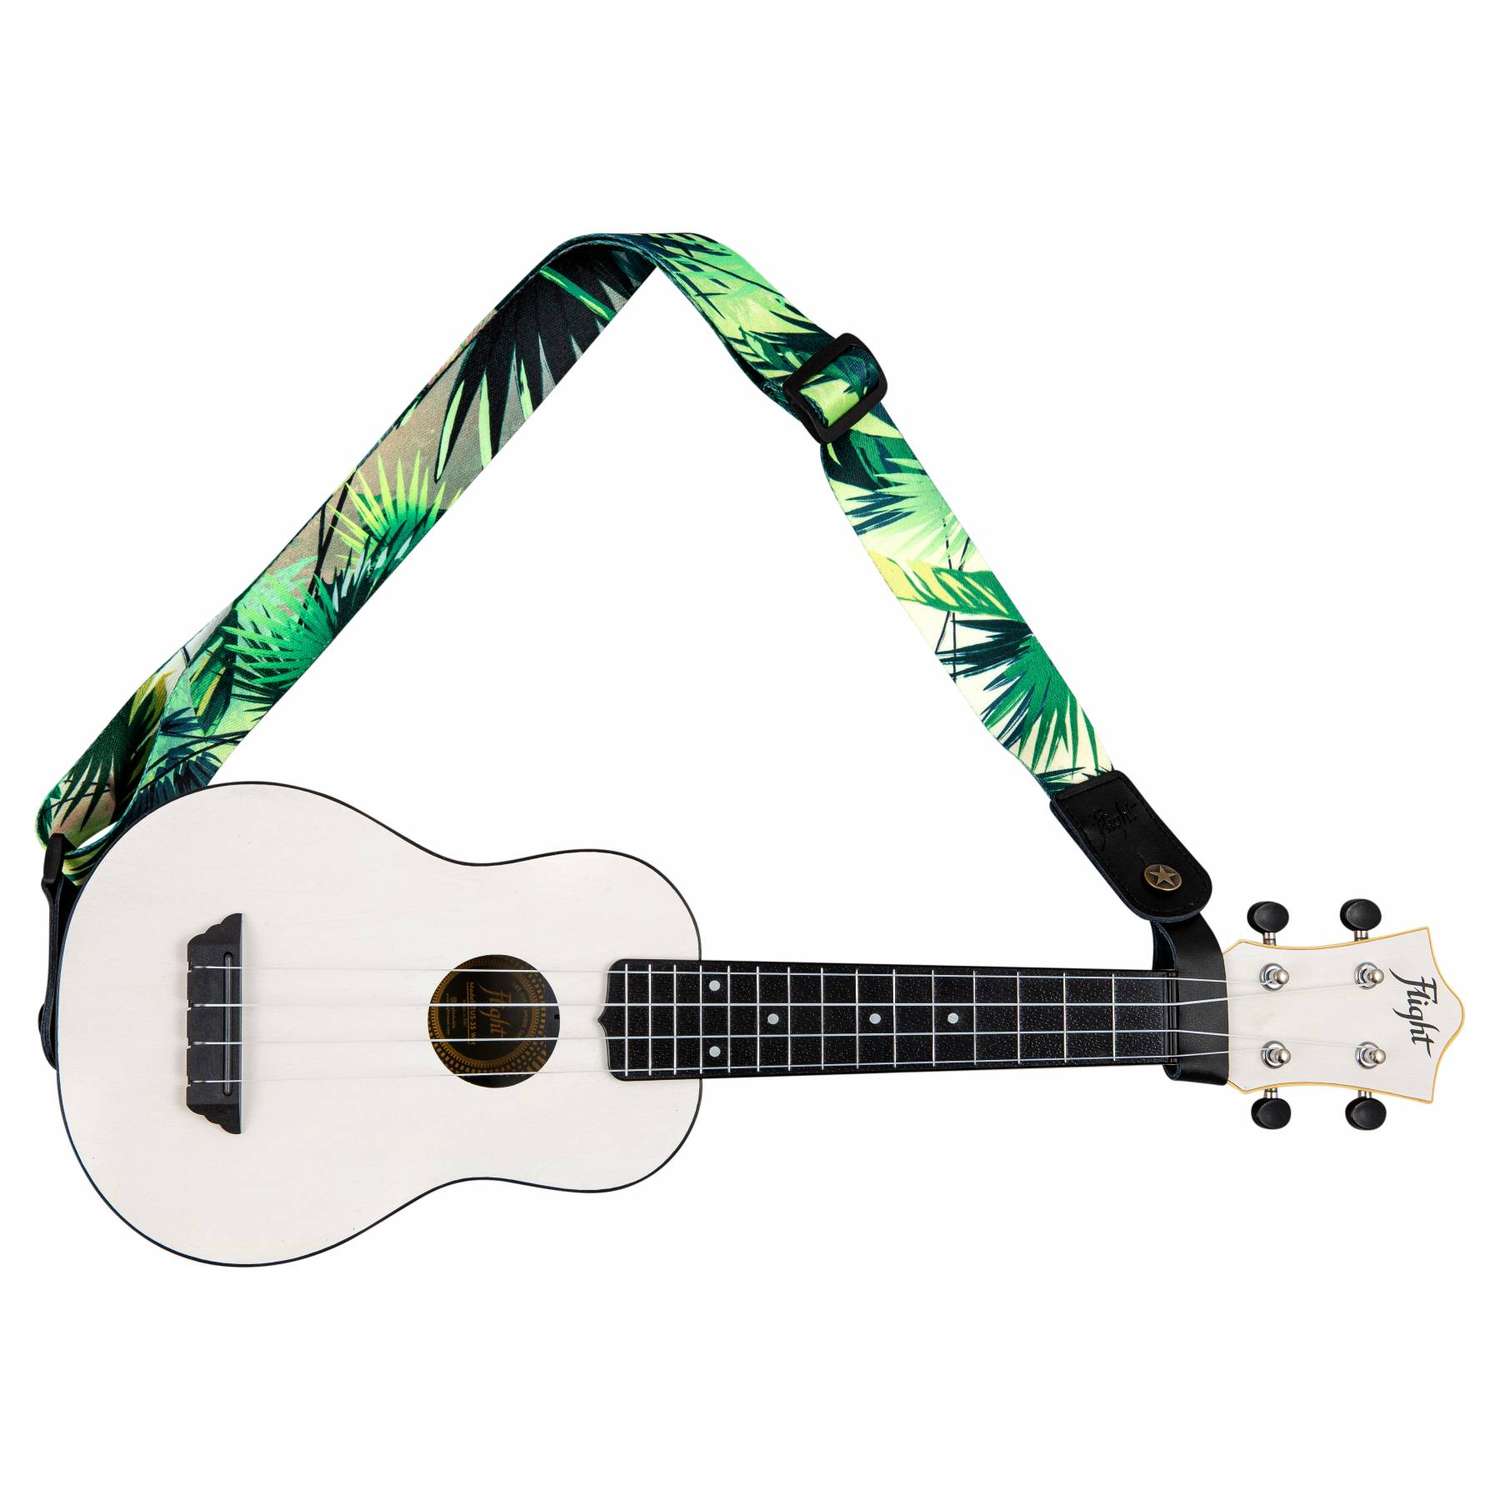 Ремень Flight S35 JUNGLE для гавайской гитары укулеле материал полипропилен зеленый рисунок джунгли - фото 4